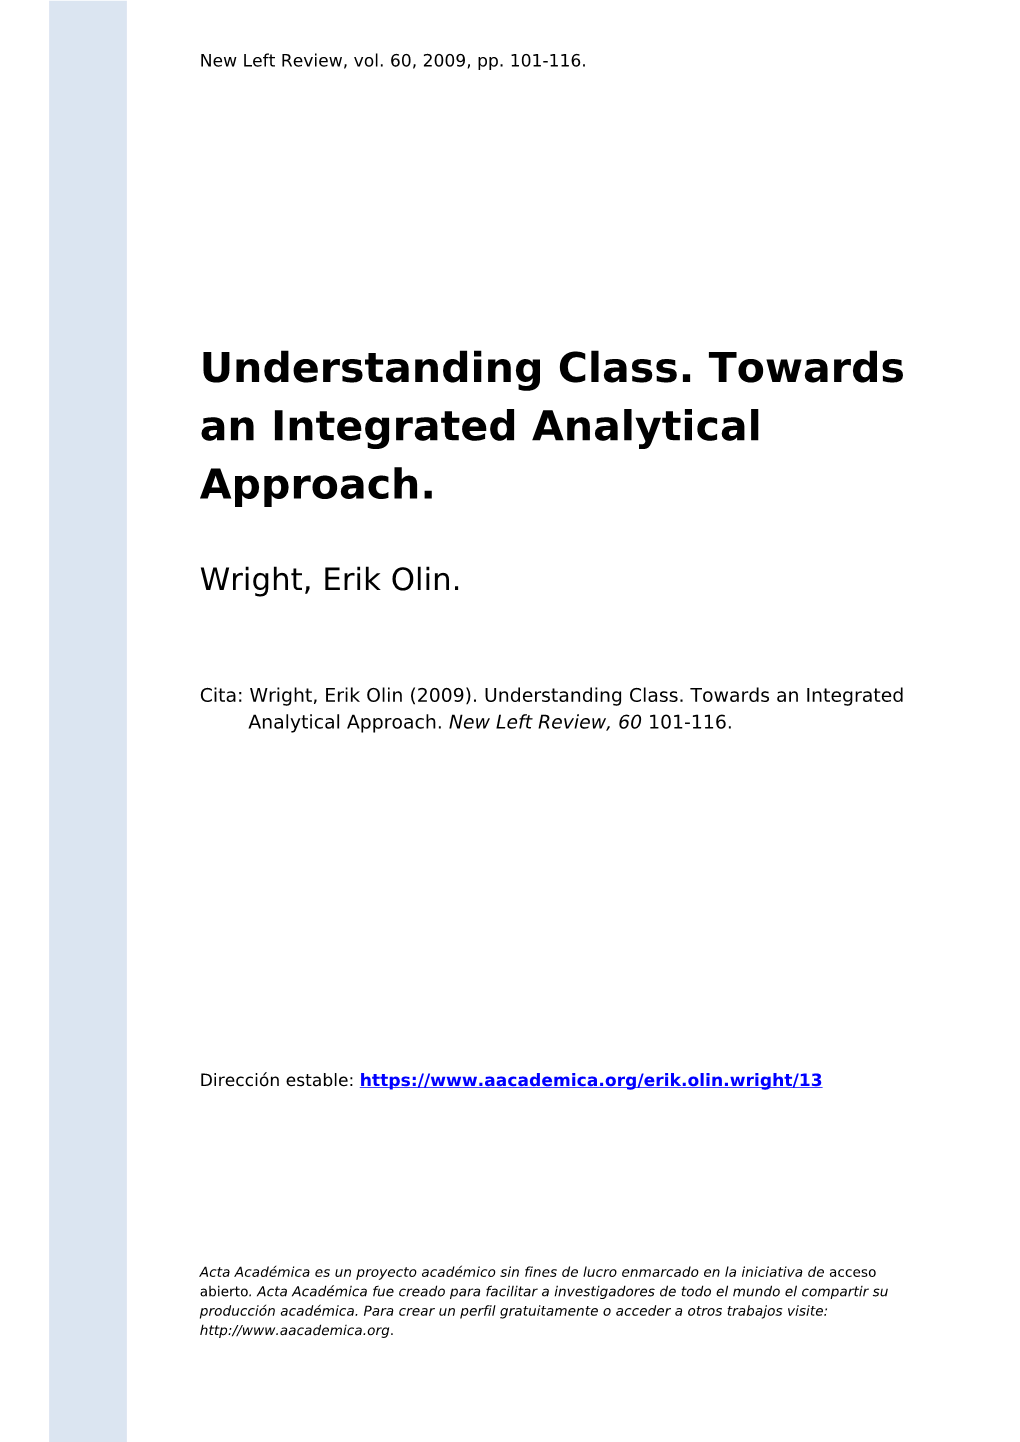 Understanding Class. Towards an Integrated Analytical Approach